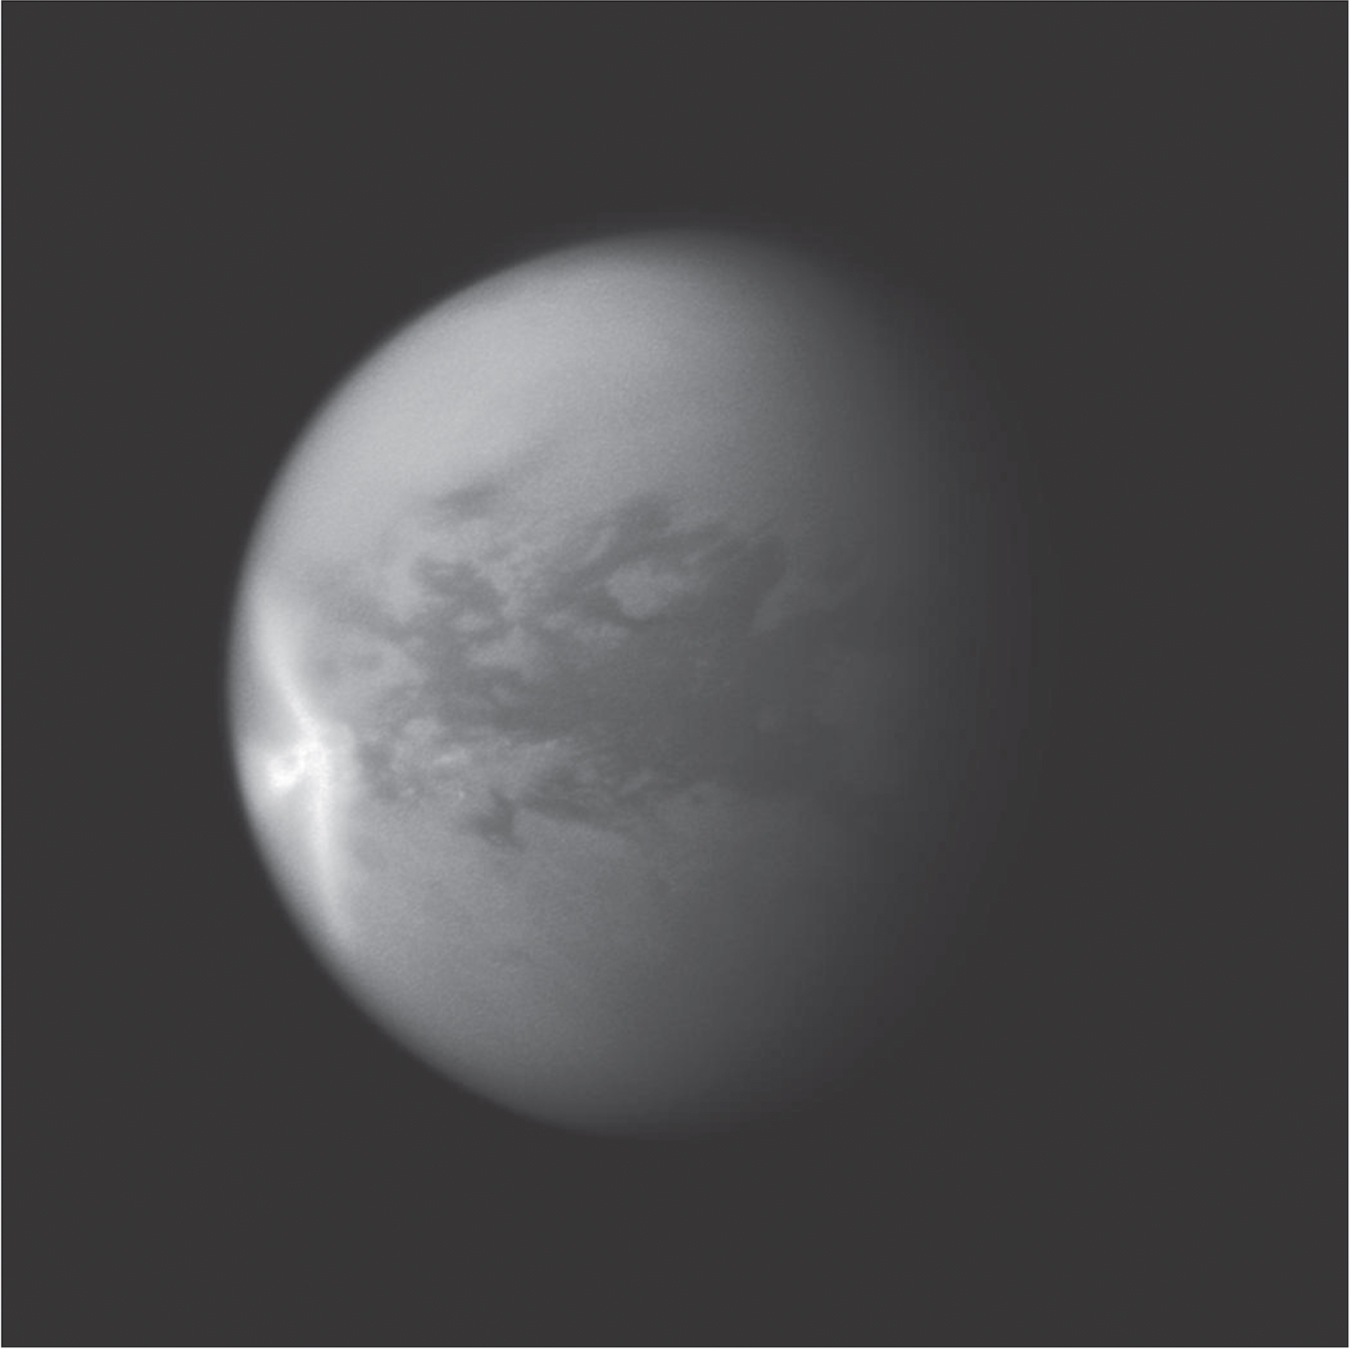 卡西尼號大幅增加了我們對泰坦雲的認識，揭示了當中意想不到的形態，例如在2011年出現的巨大「箭頭形」雲（圖中左側）。降雨使超過500,000平方公里的陸地範圍變暗。甲烷蒸發掉後，局部地區開始重新變亮。                                          圖片鳴謝: NASA/JPL/STScI. Image PIA12817